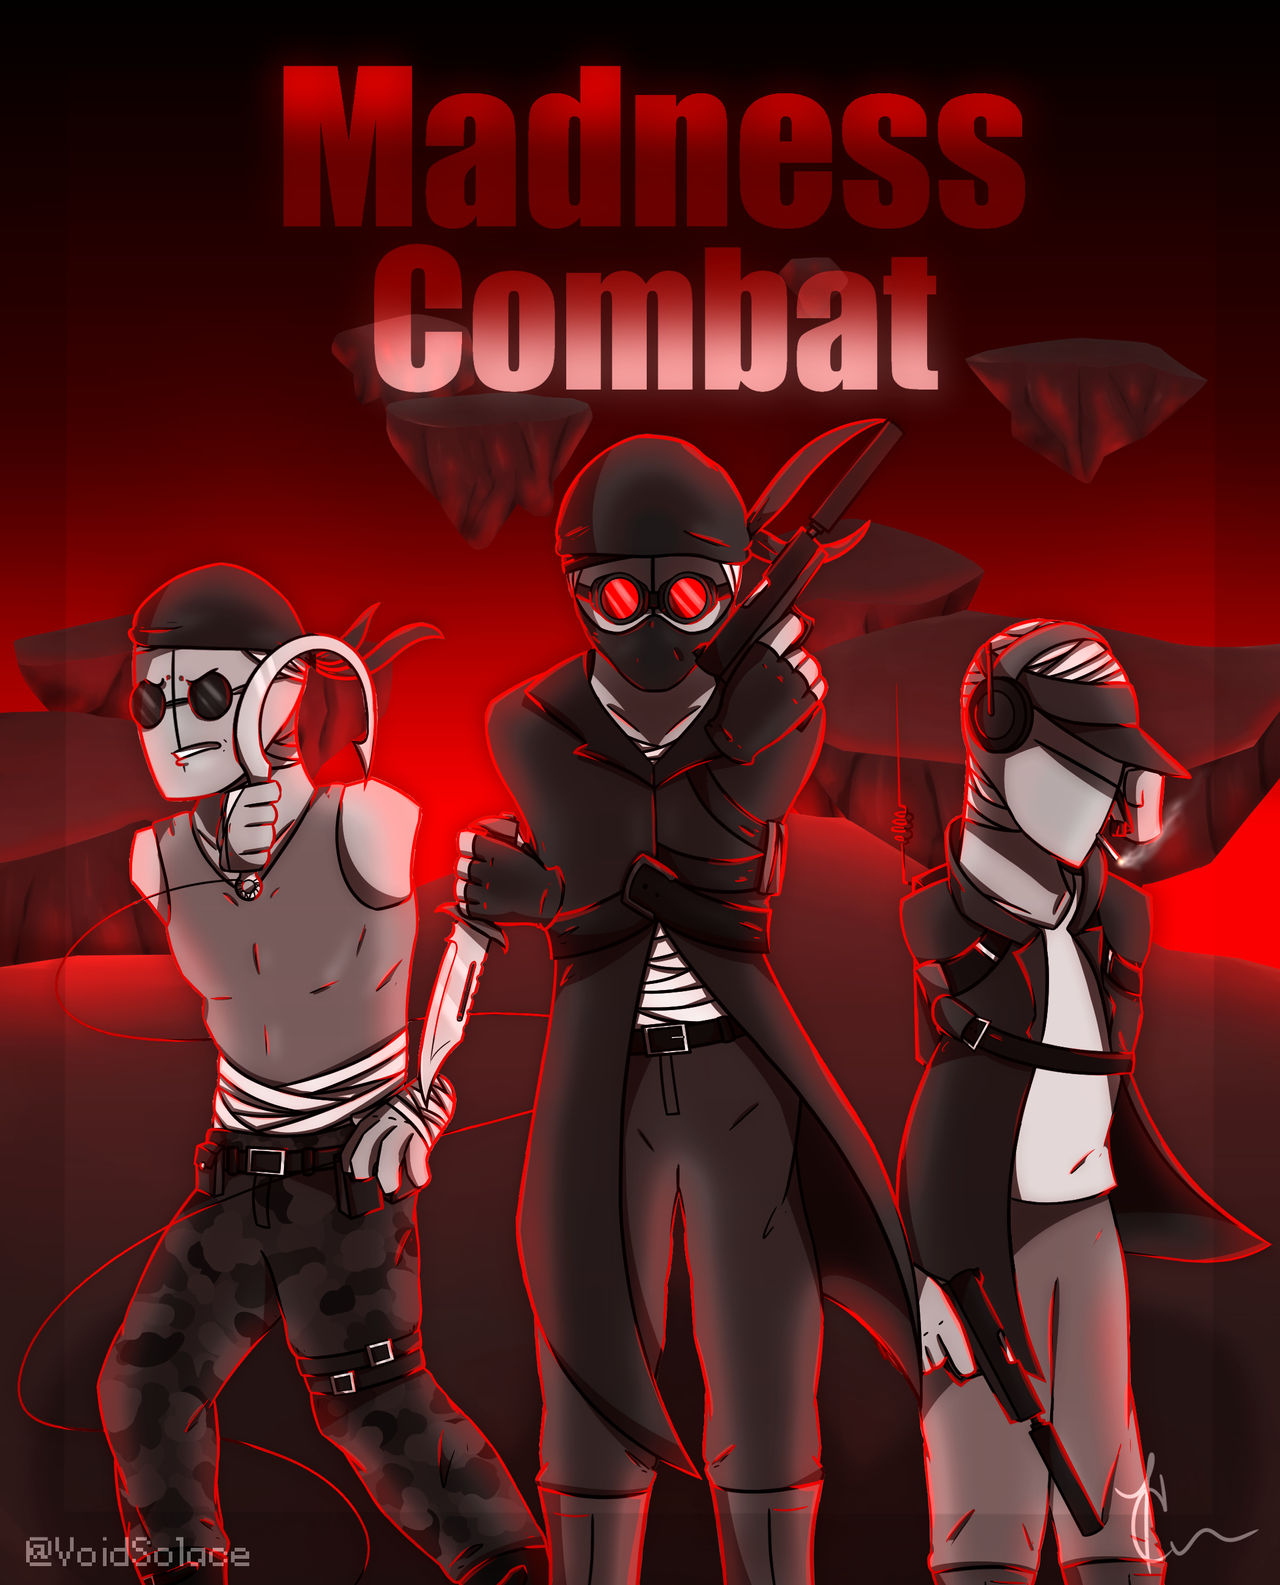 Madness Combat characters by kaizokupiano on DeviantArt